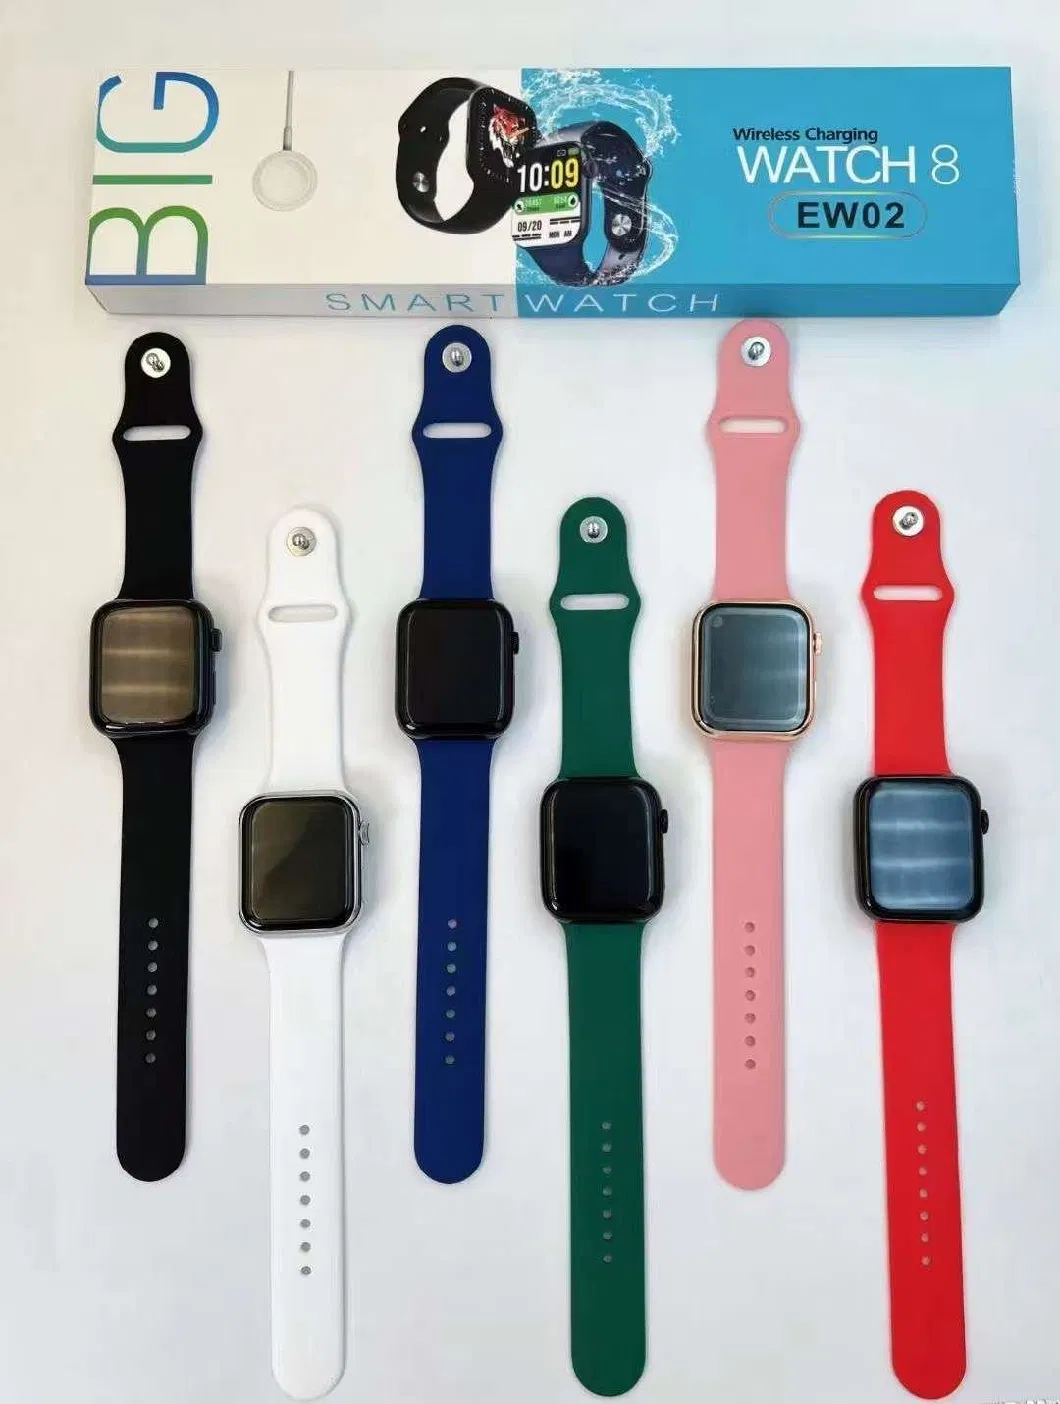 Est Seller T900ultra S Pk Kd99 T800 Z55 Z56 Smartwatch OEM ODM SKD Series I 8 Watch Ultra T900 Ultra S Smart Watch